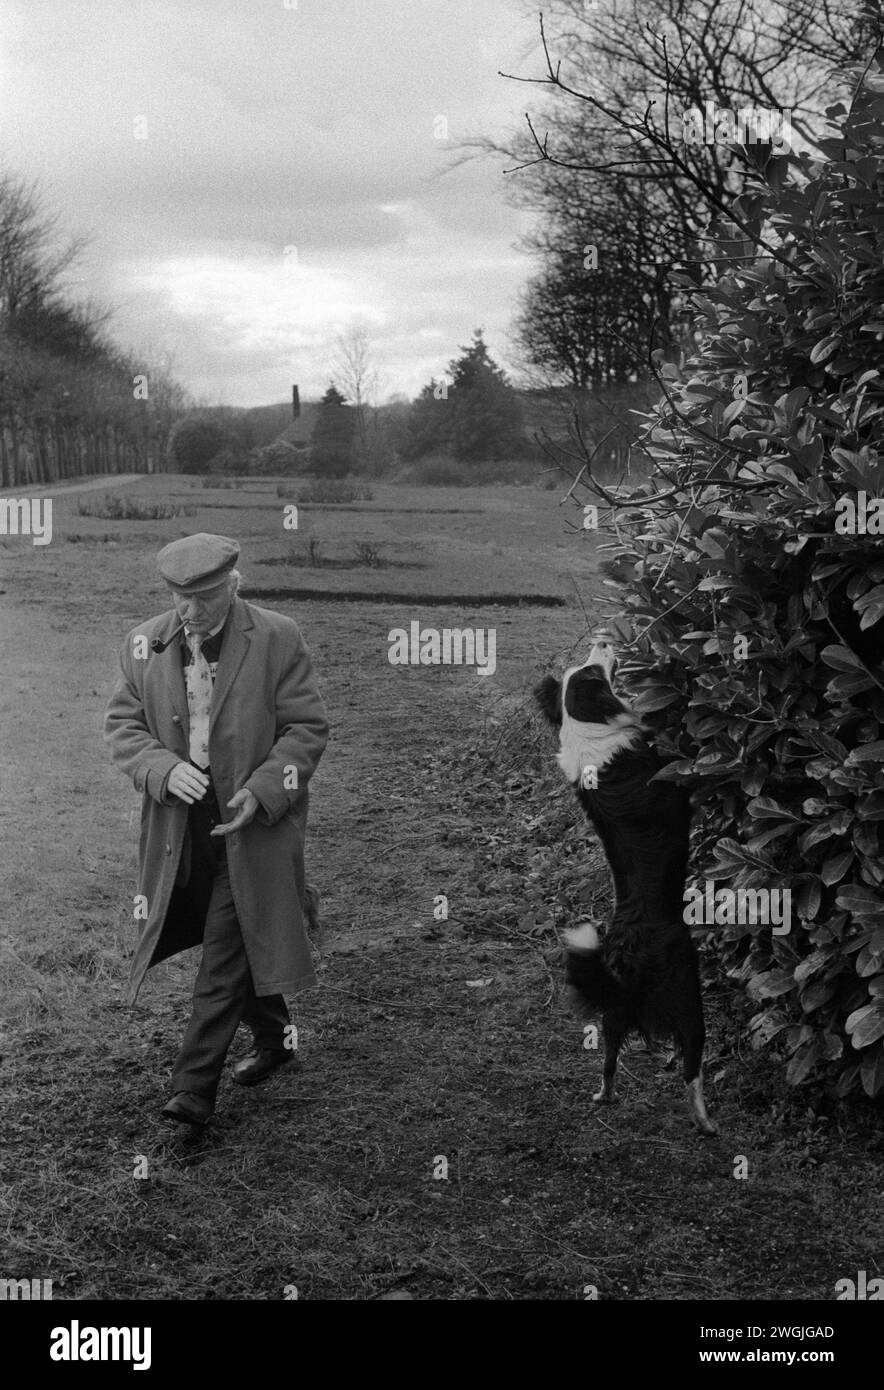 Saltaire homme prenant son chien pour une promenade, vie quotidienne personne âgée. Shipley, Bradford West Yorkshire Angleterre des années 1981 1980 Royaume-Uni. HOMER SYKES. Banque D'Images